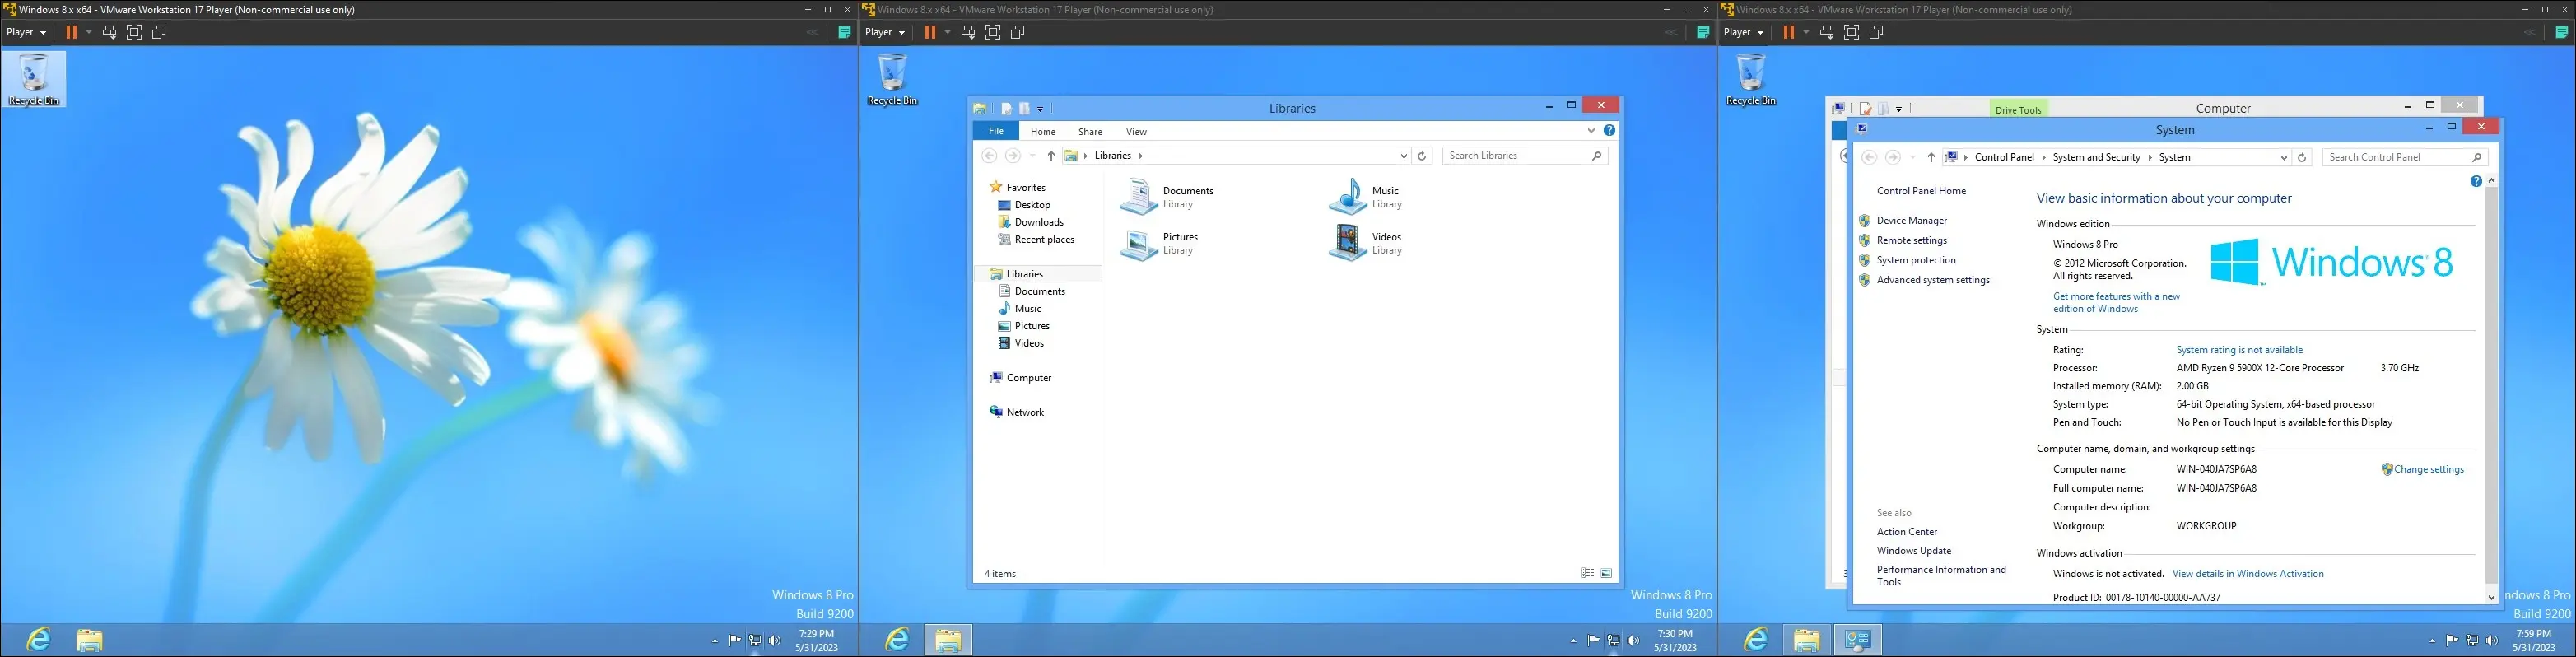 데스크톱, 탐색기 인터페이스 및 "컴퓨터 페이지 정보"를 보여주는 가상 머신의 Windows 8 이미지